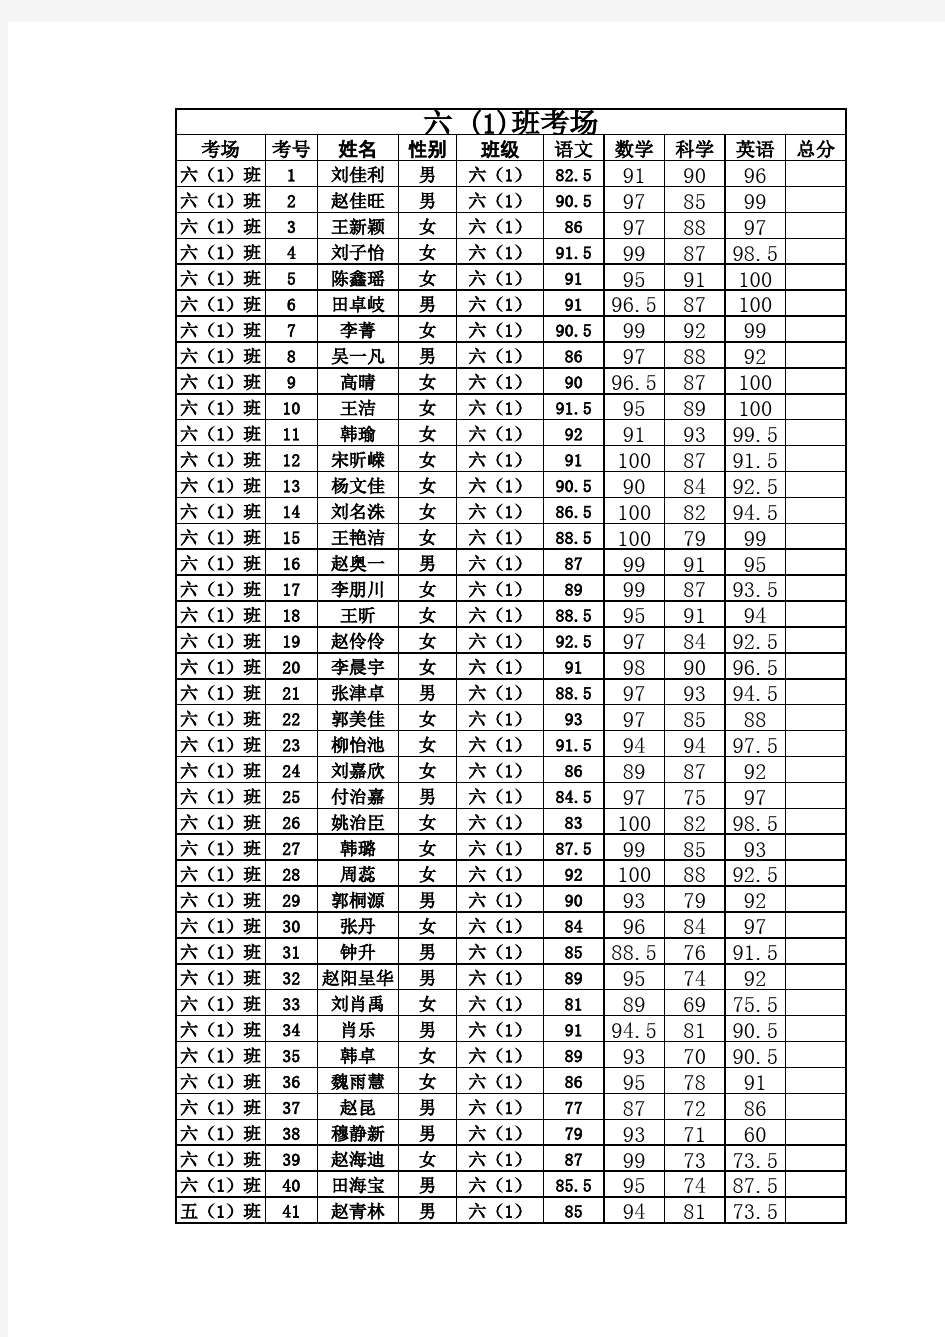 2012-2013期末考试成绩